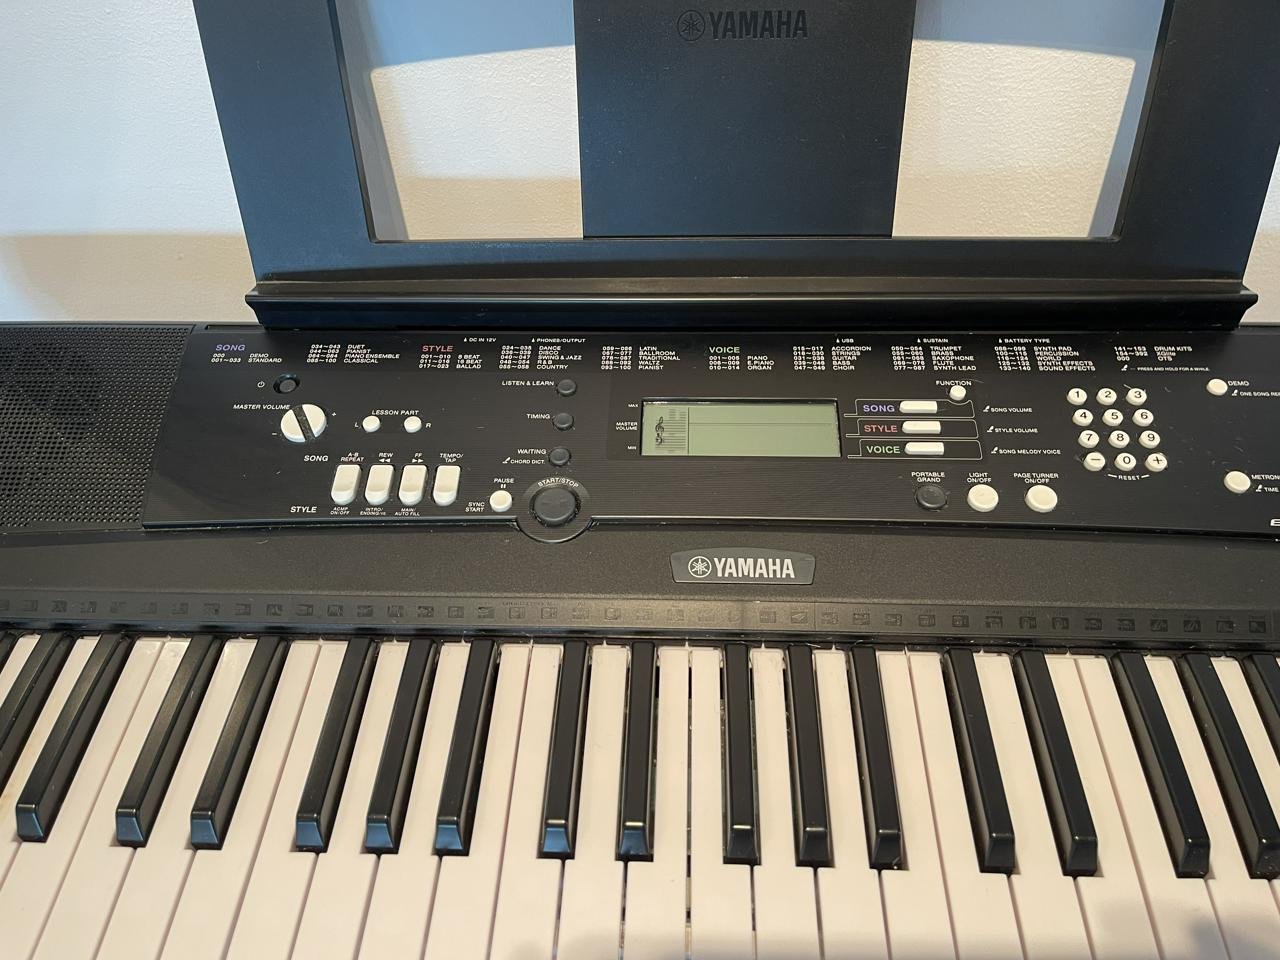 Yamahaa keyboard